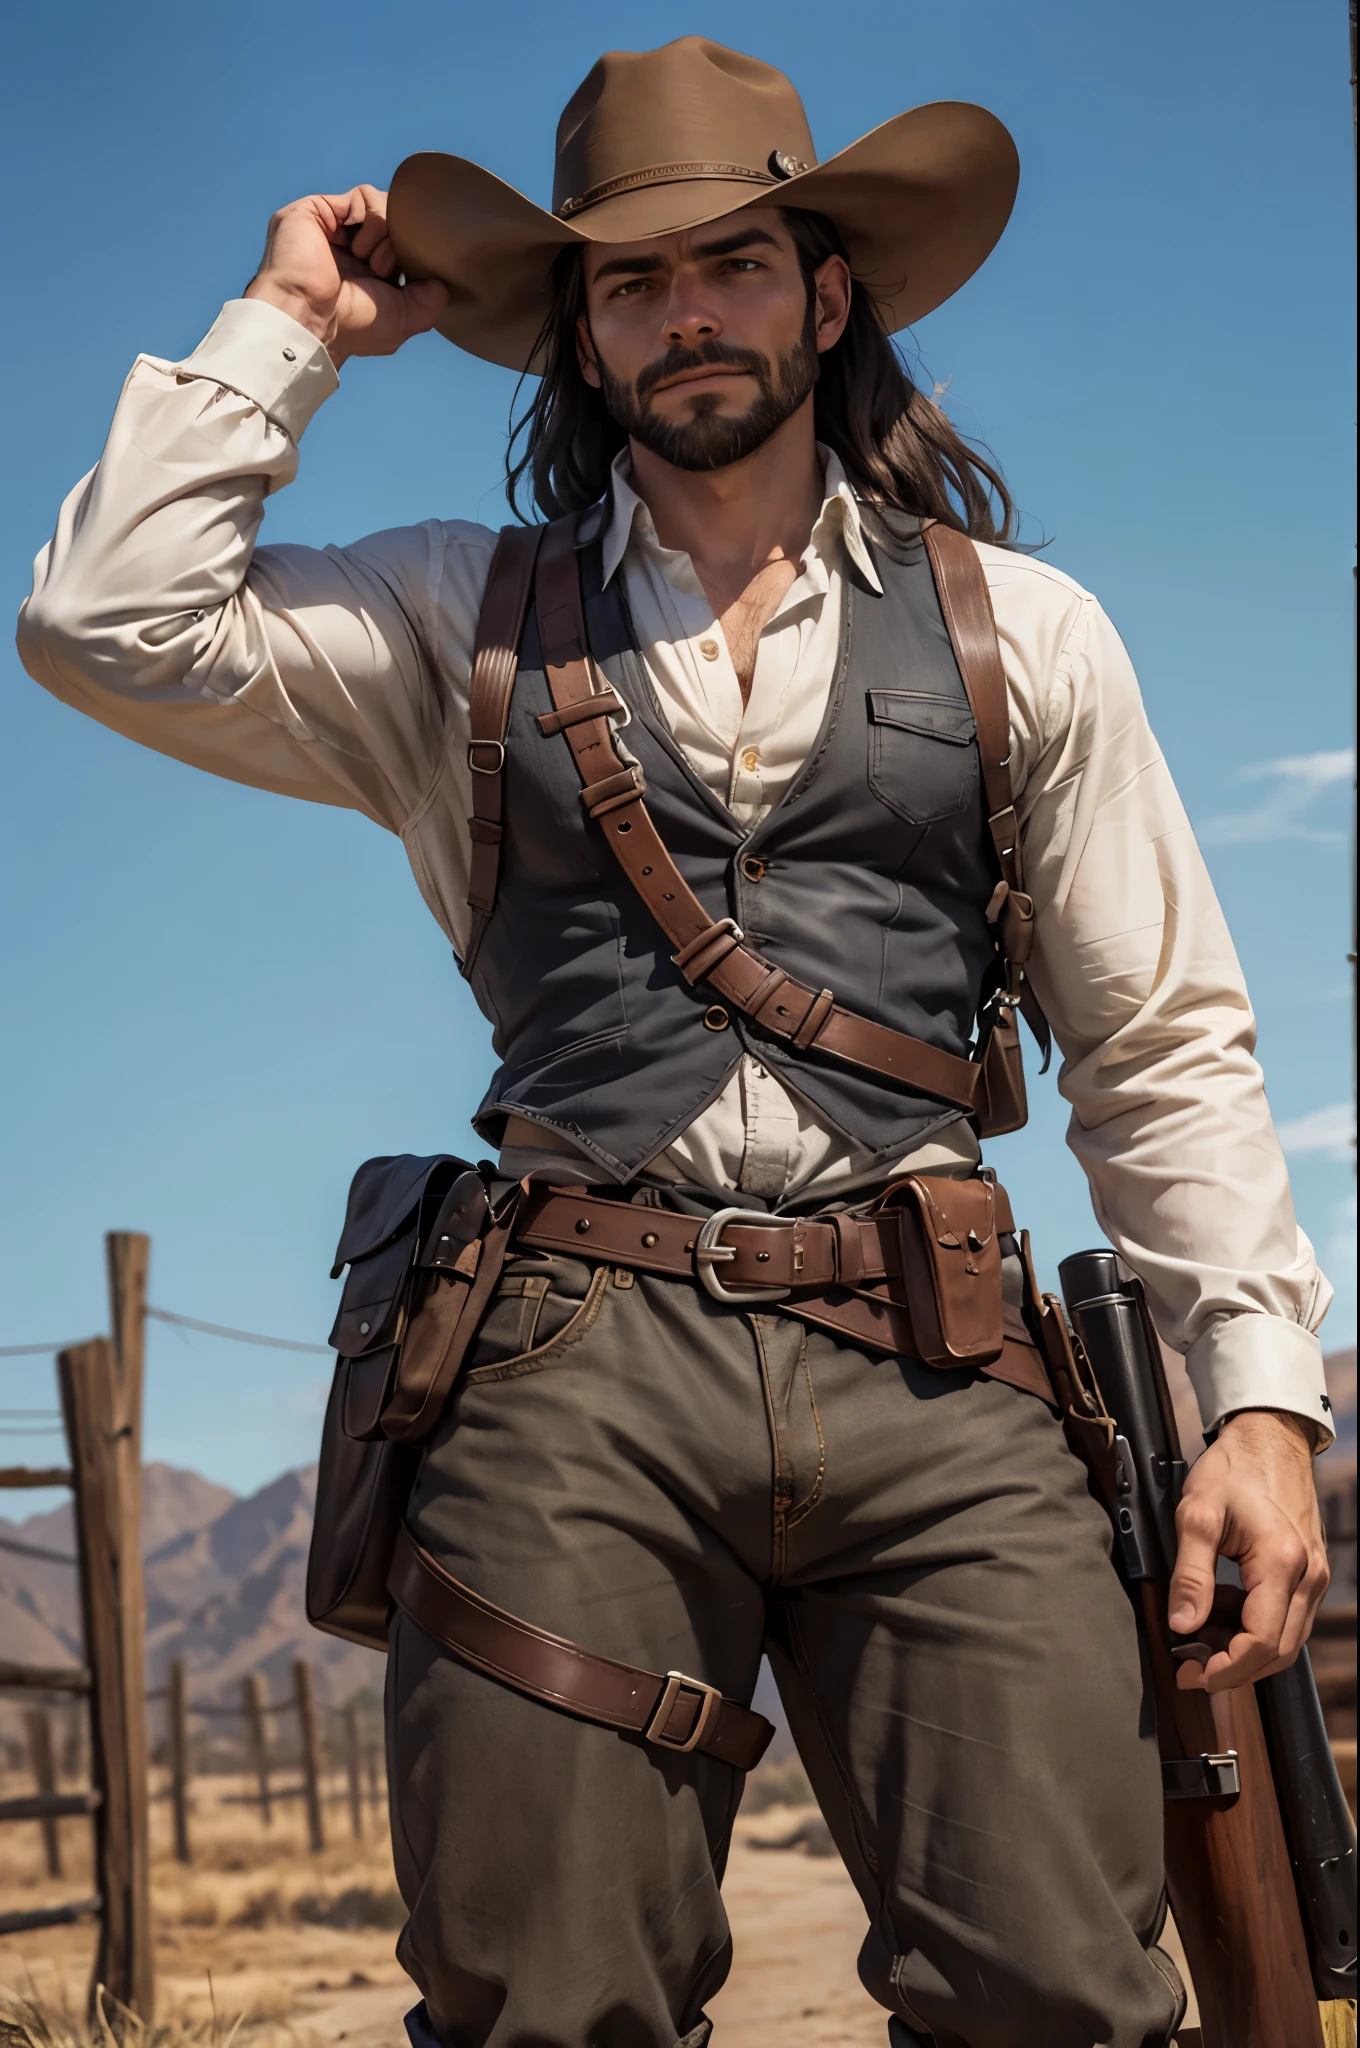 Un homme de 35 ans, avec une incroyable barbe courte en noir, cheveux longs et raides également en noir, mettant en valeur ses superbes yeux bleus et son corps attrayant, immergé dans un décor western inspiré de Red Dead, portant une authentique tenue de cowboy et avec un pistolet dans un étui. illustration, style dessiné à la main avec des détails minutieux, --avec 16:9h -- à 17h